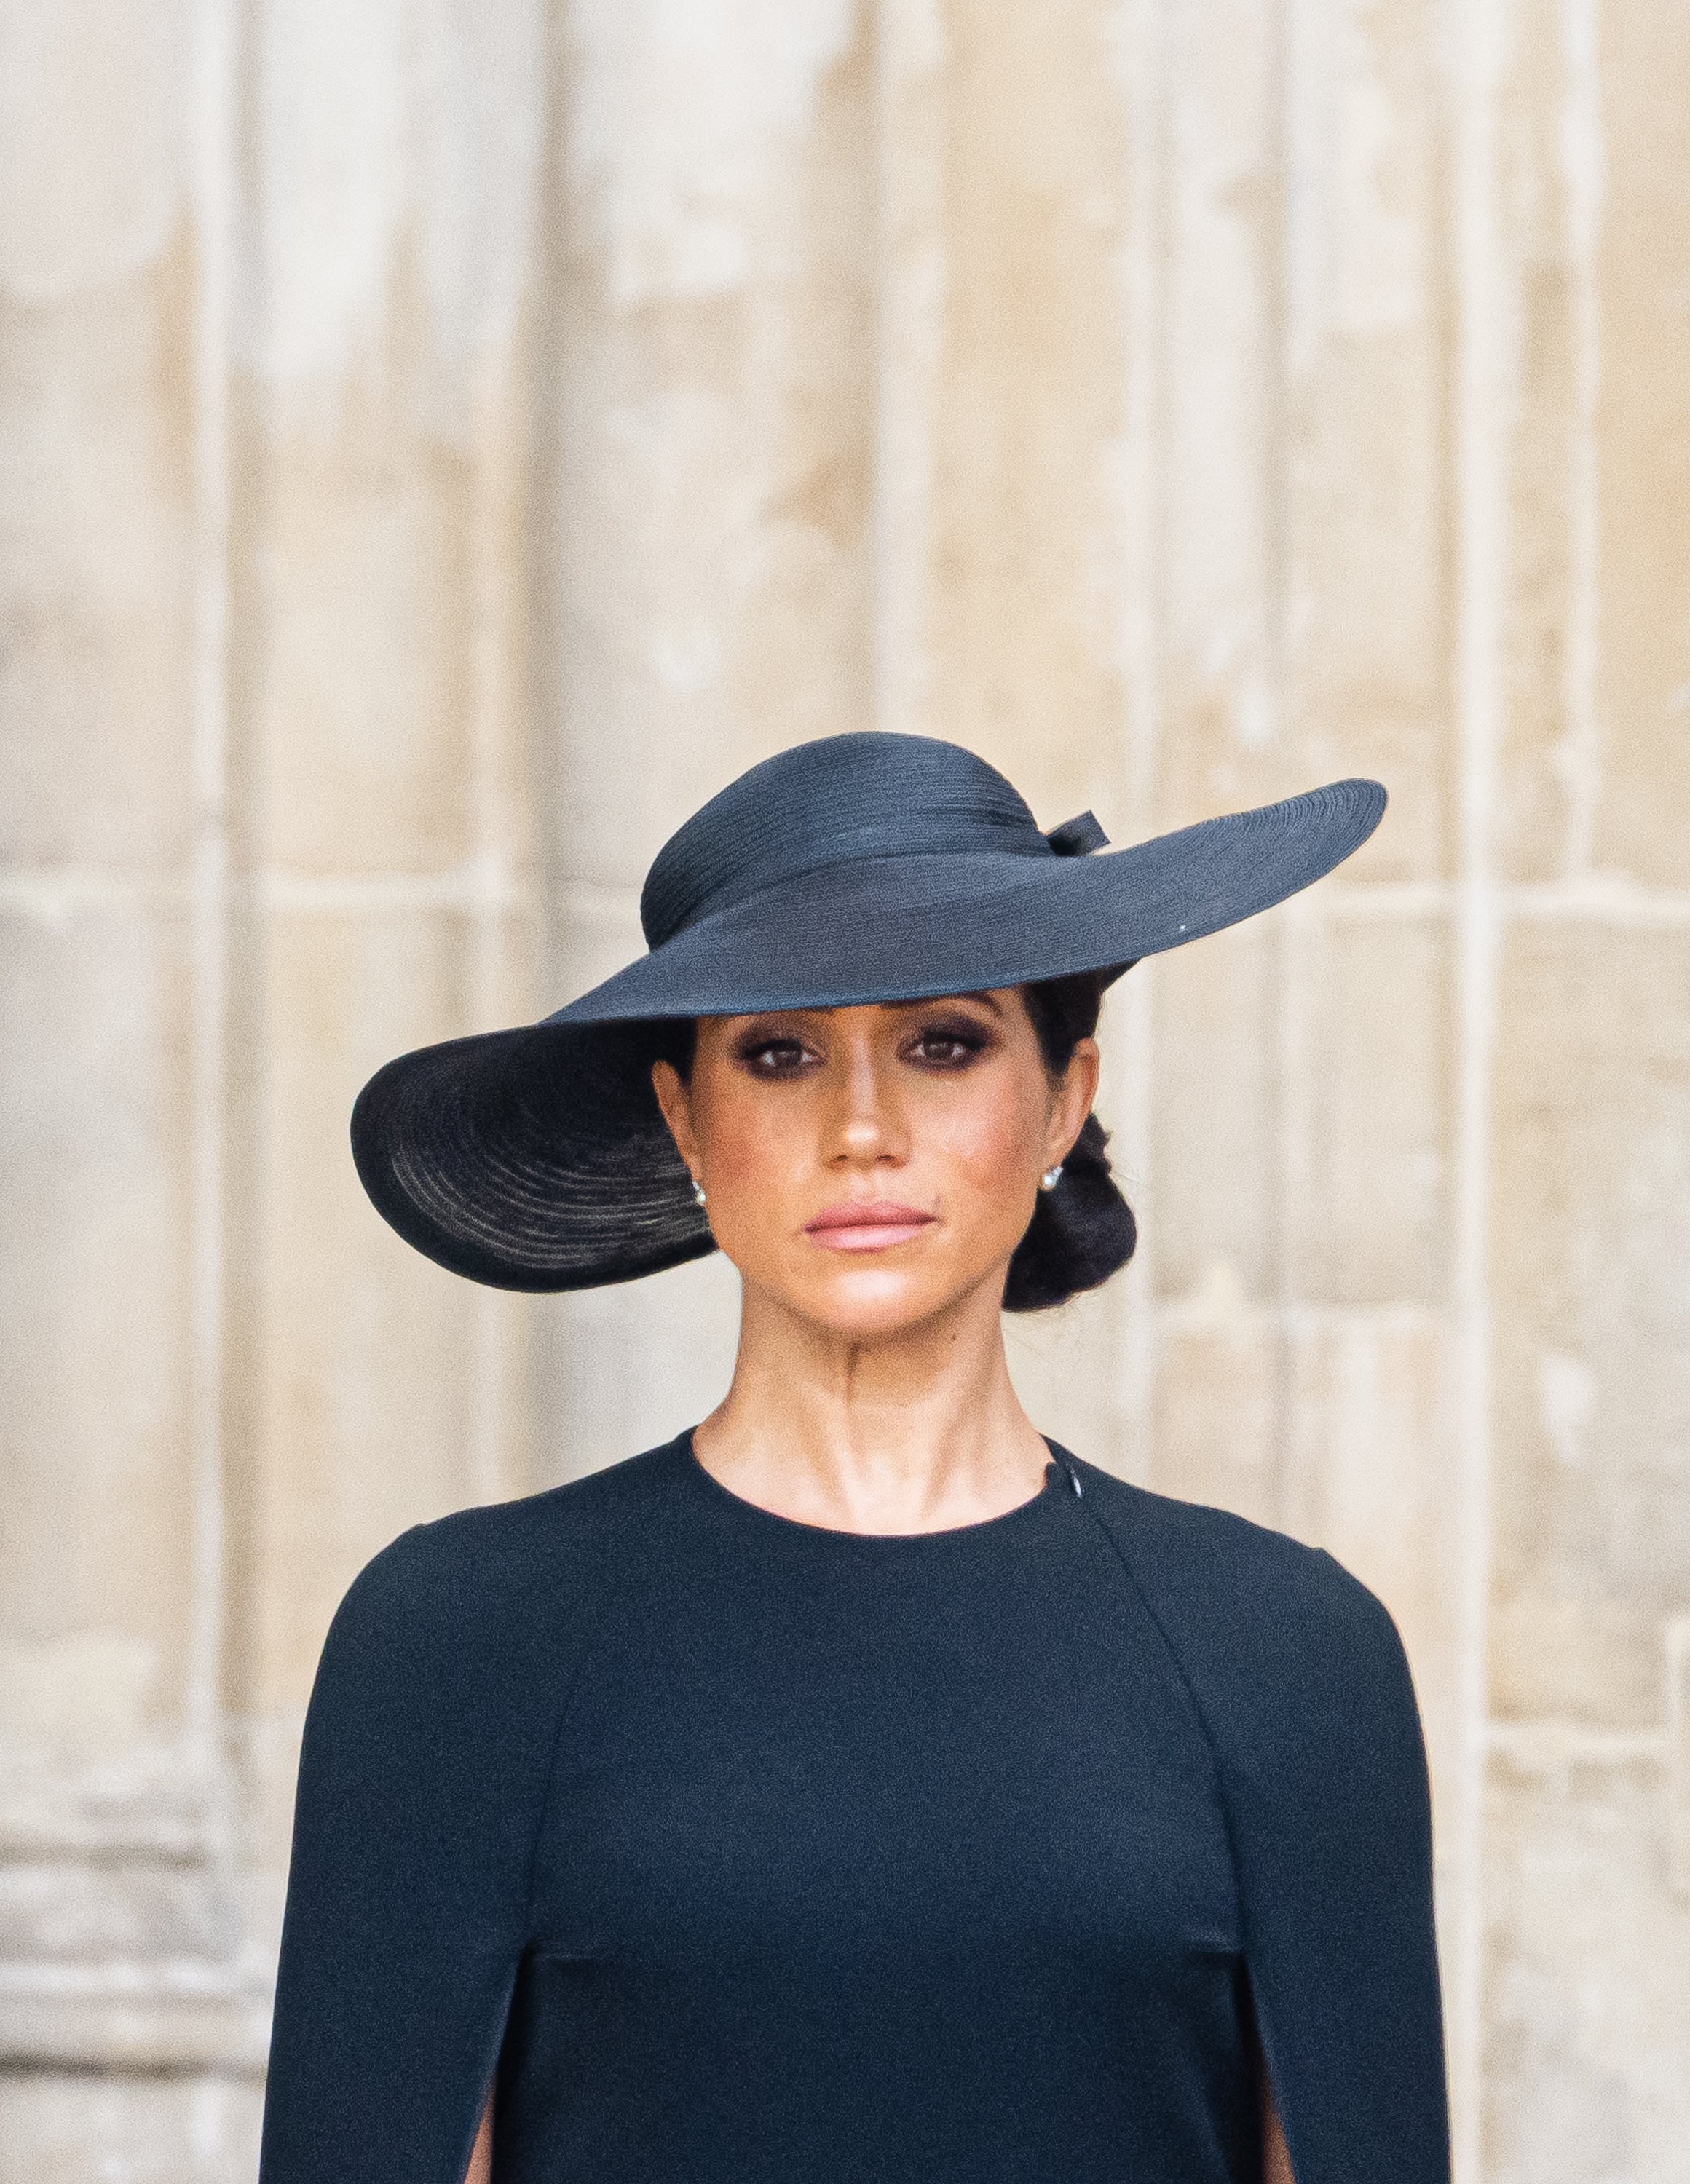 Meghan durante el funeral de estado de la reina Elizabeth II en la Abadía de Westminster, el 19 de septiembre de 2022 en Londres, Inglaterra. | Foto: Getty Images